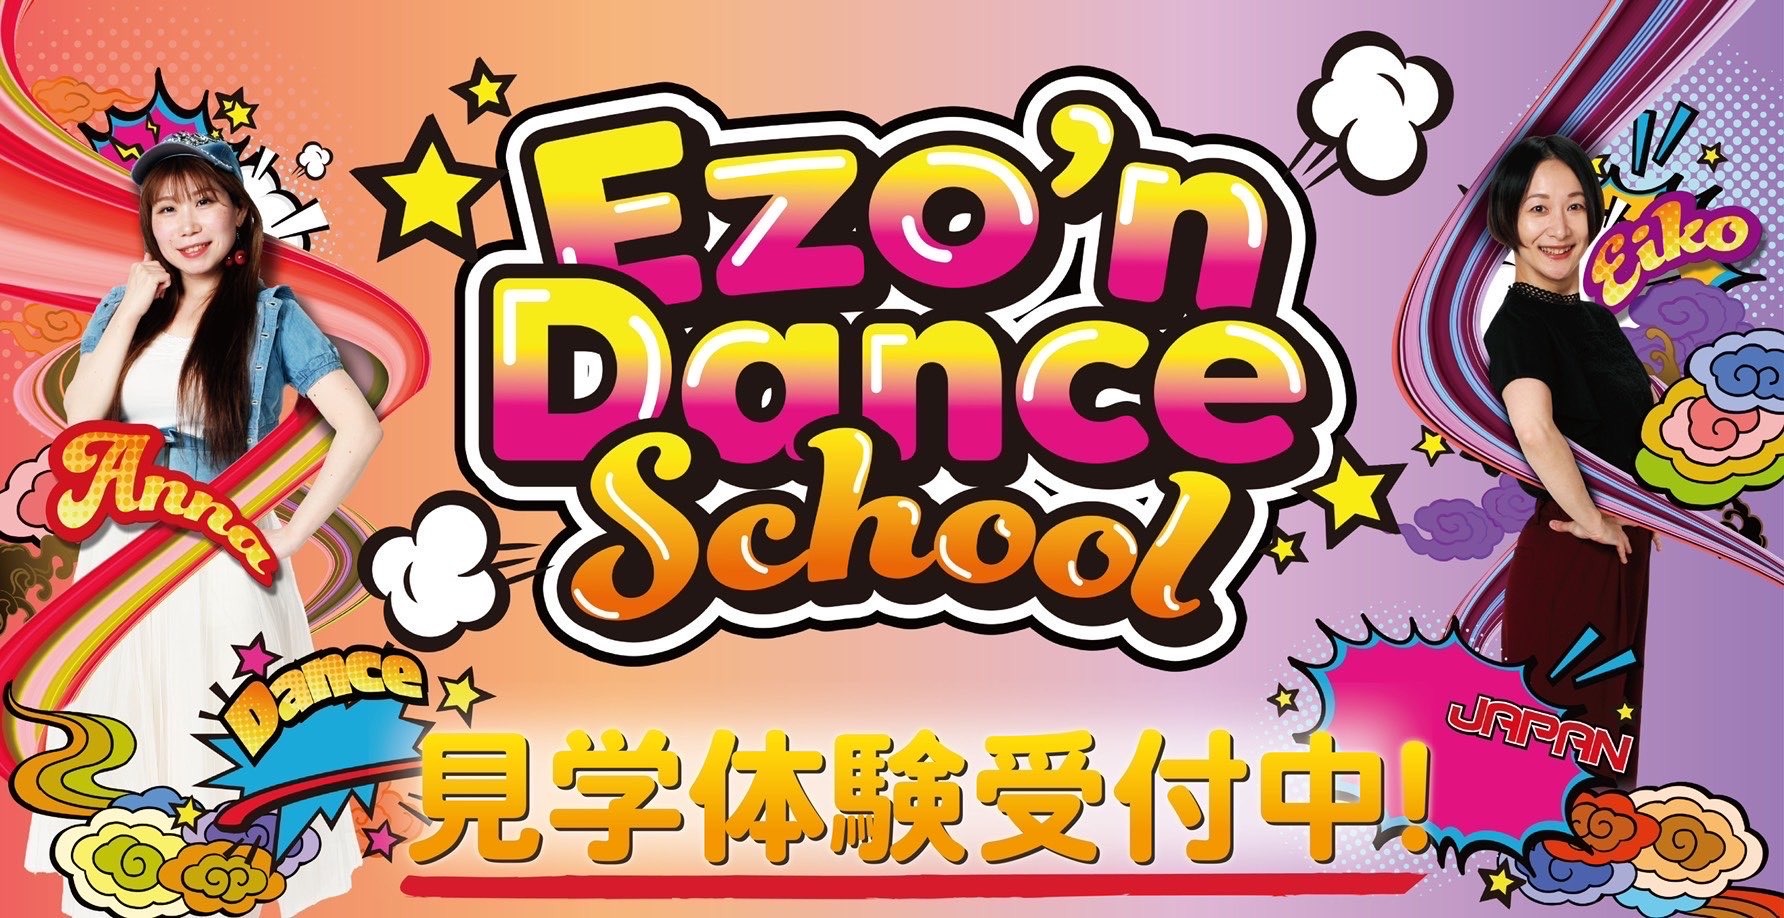 Ezo'z Dance School